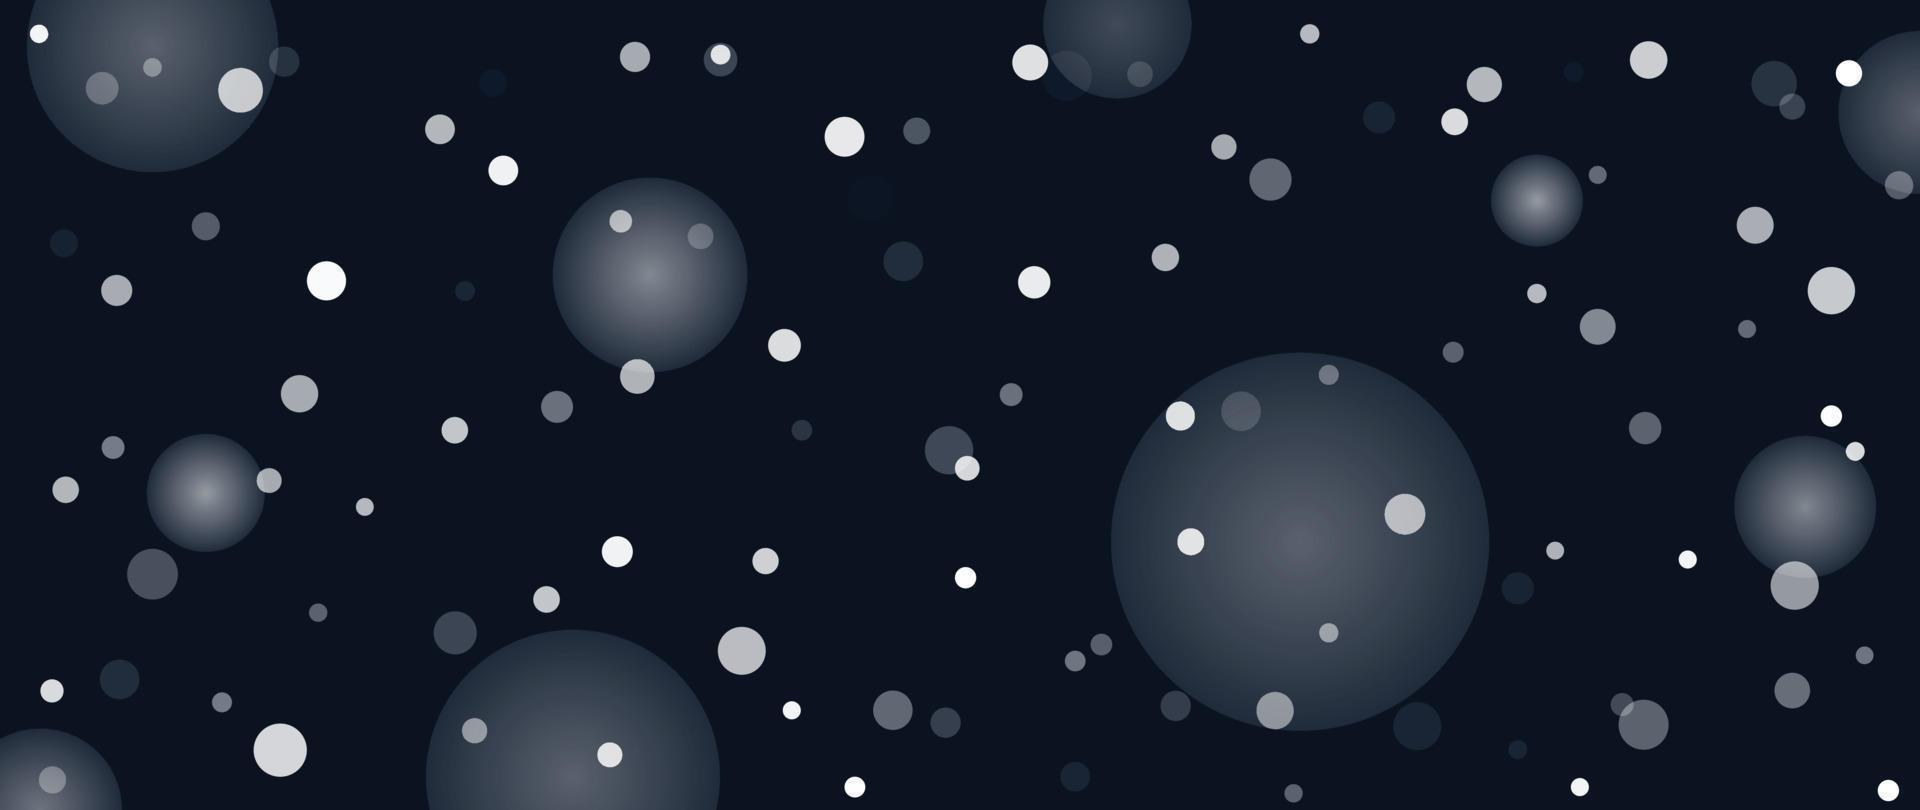 elegante Winterschneefallhintergrund-Vektorillustration. luxus dekorativer schneefall nachthimmel auf bokeh dunkelblauem hintergrund. Design geeignet für Einladungskarte, Gruß, Tapete, Poster, Banner. vektor